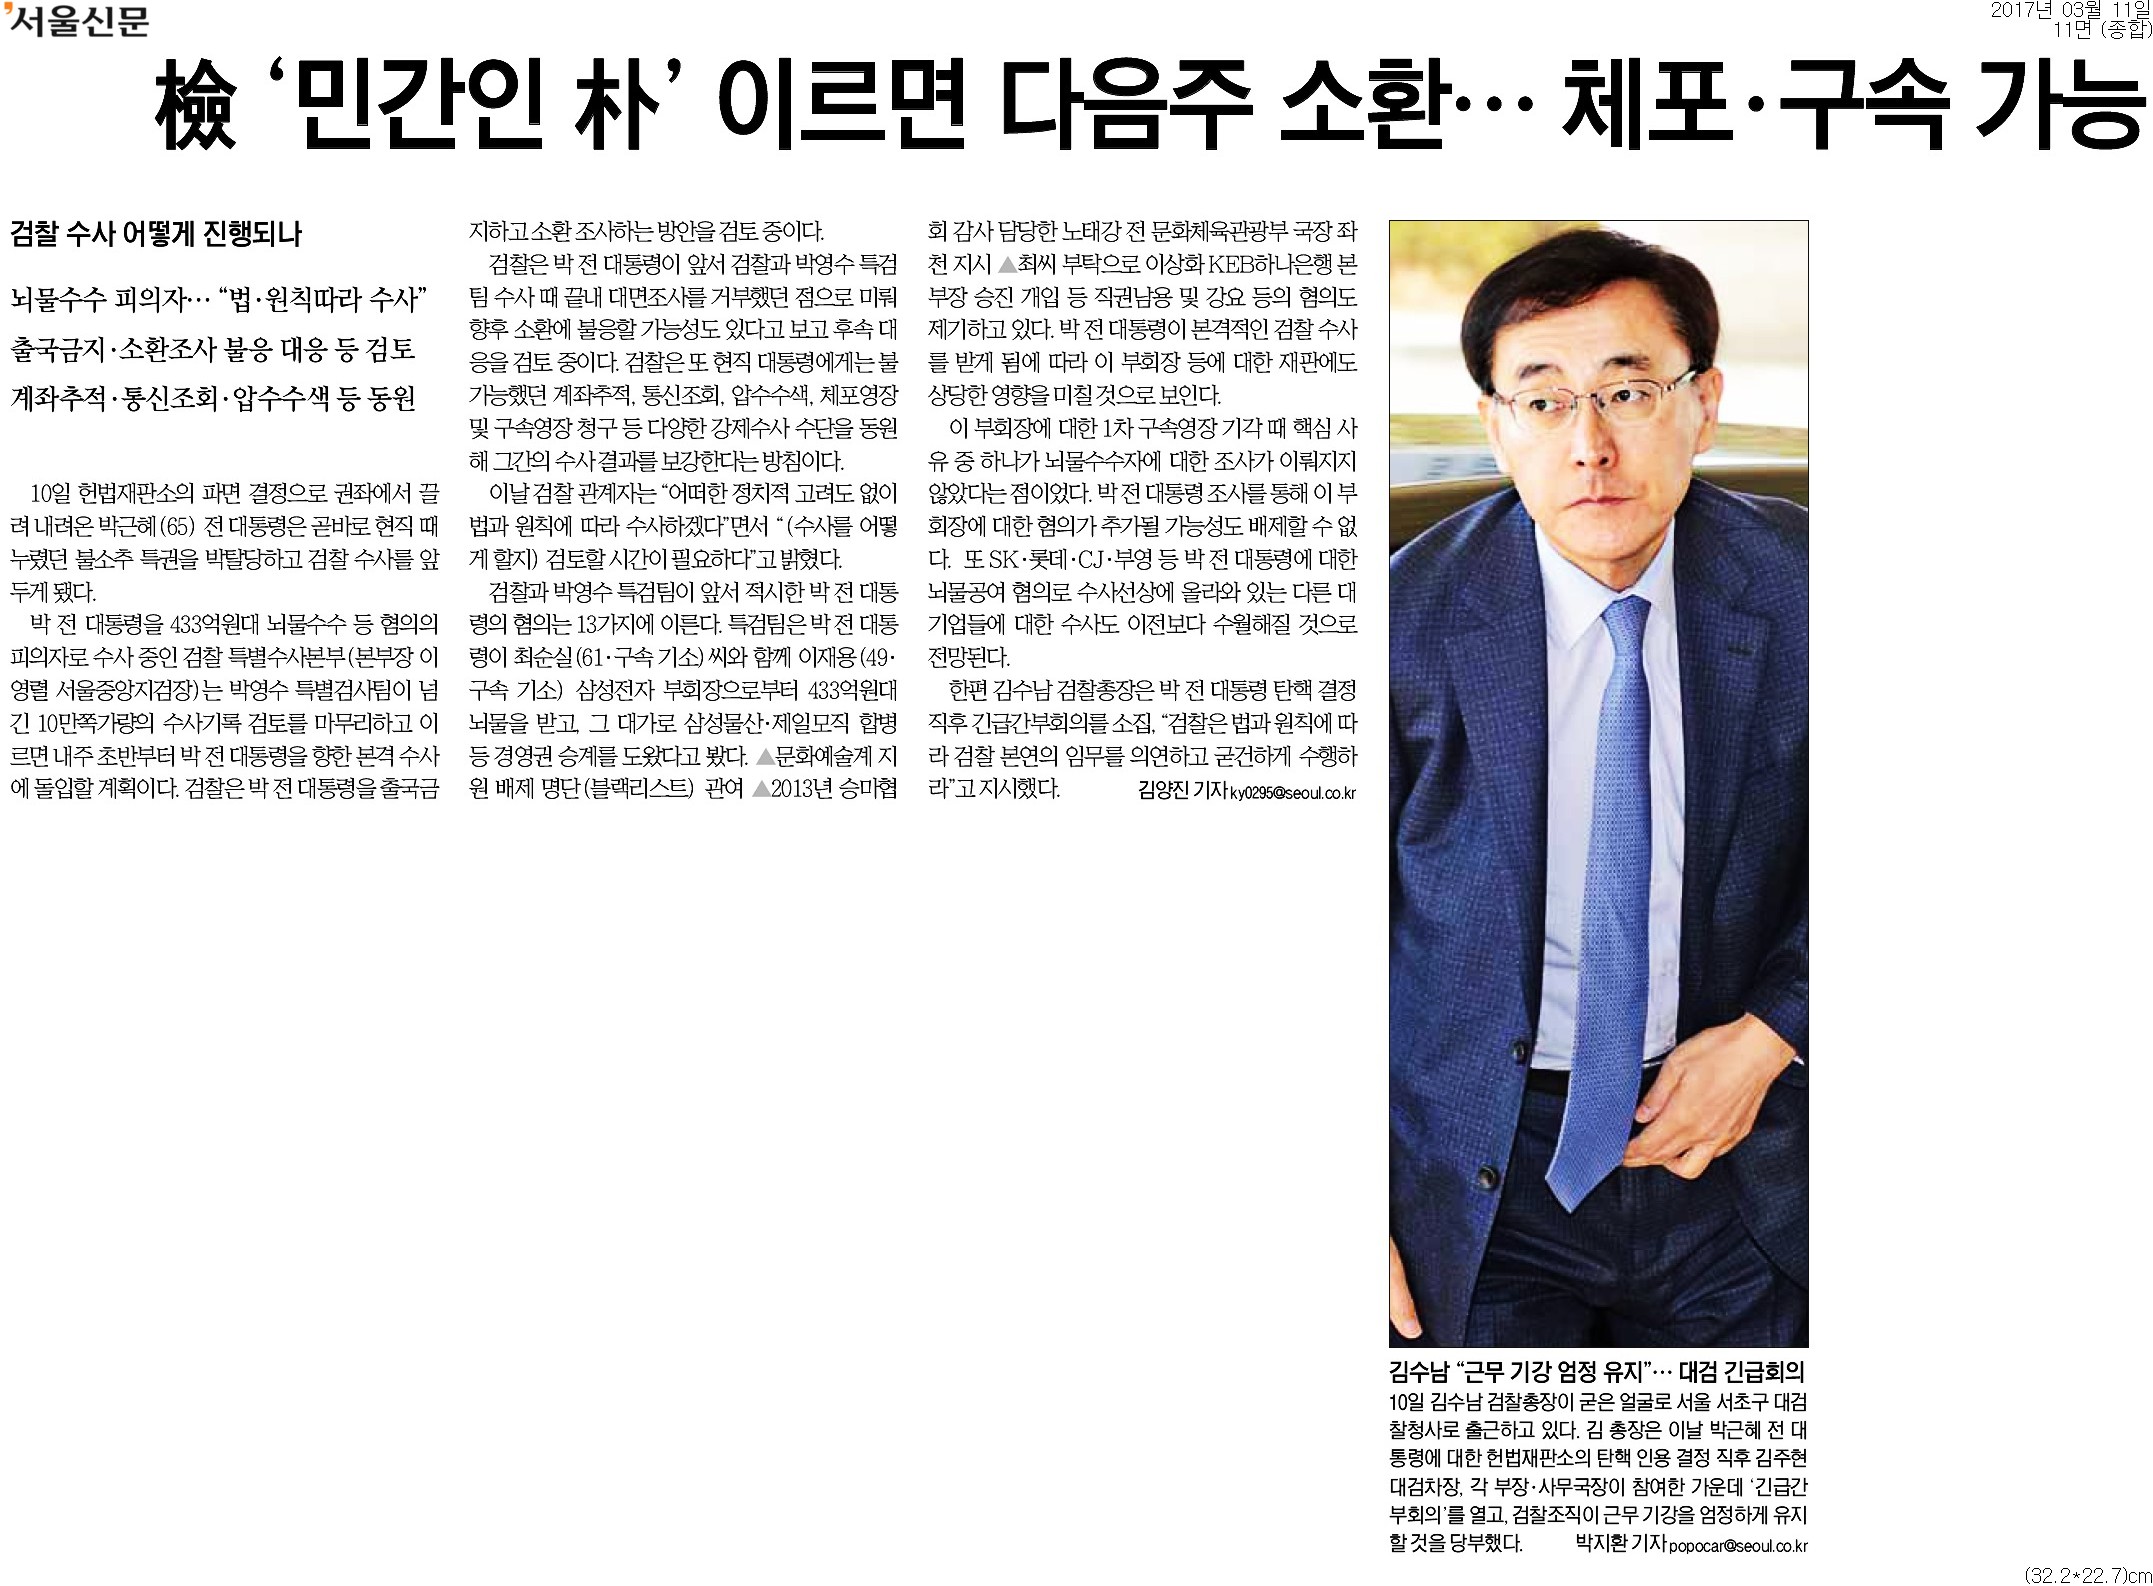 ▲ 서울신문 11면 기사